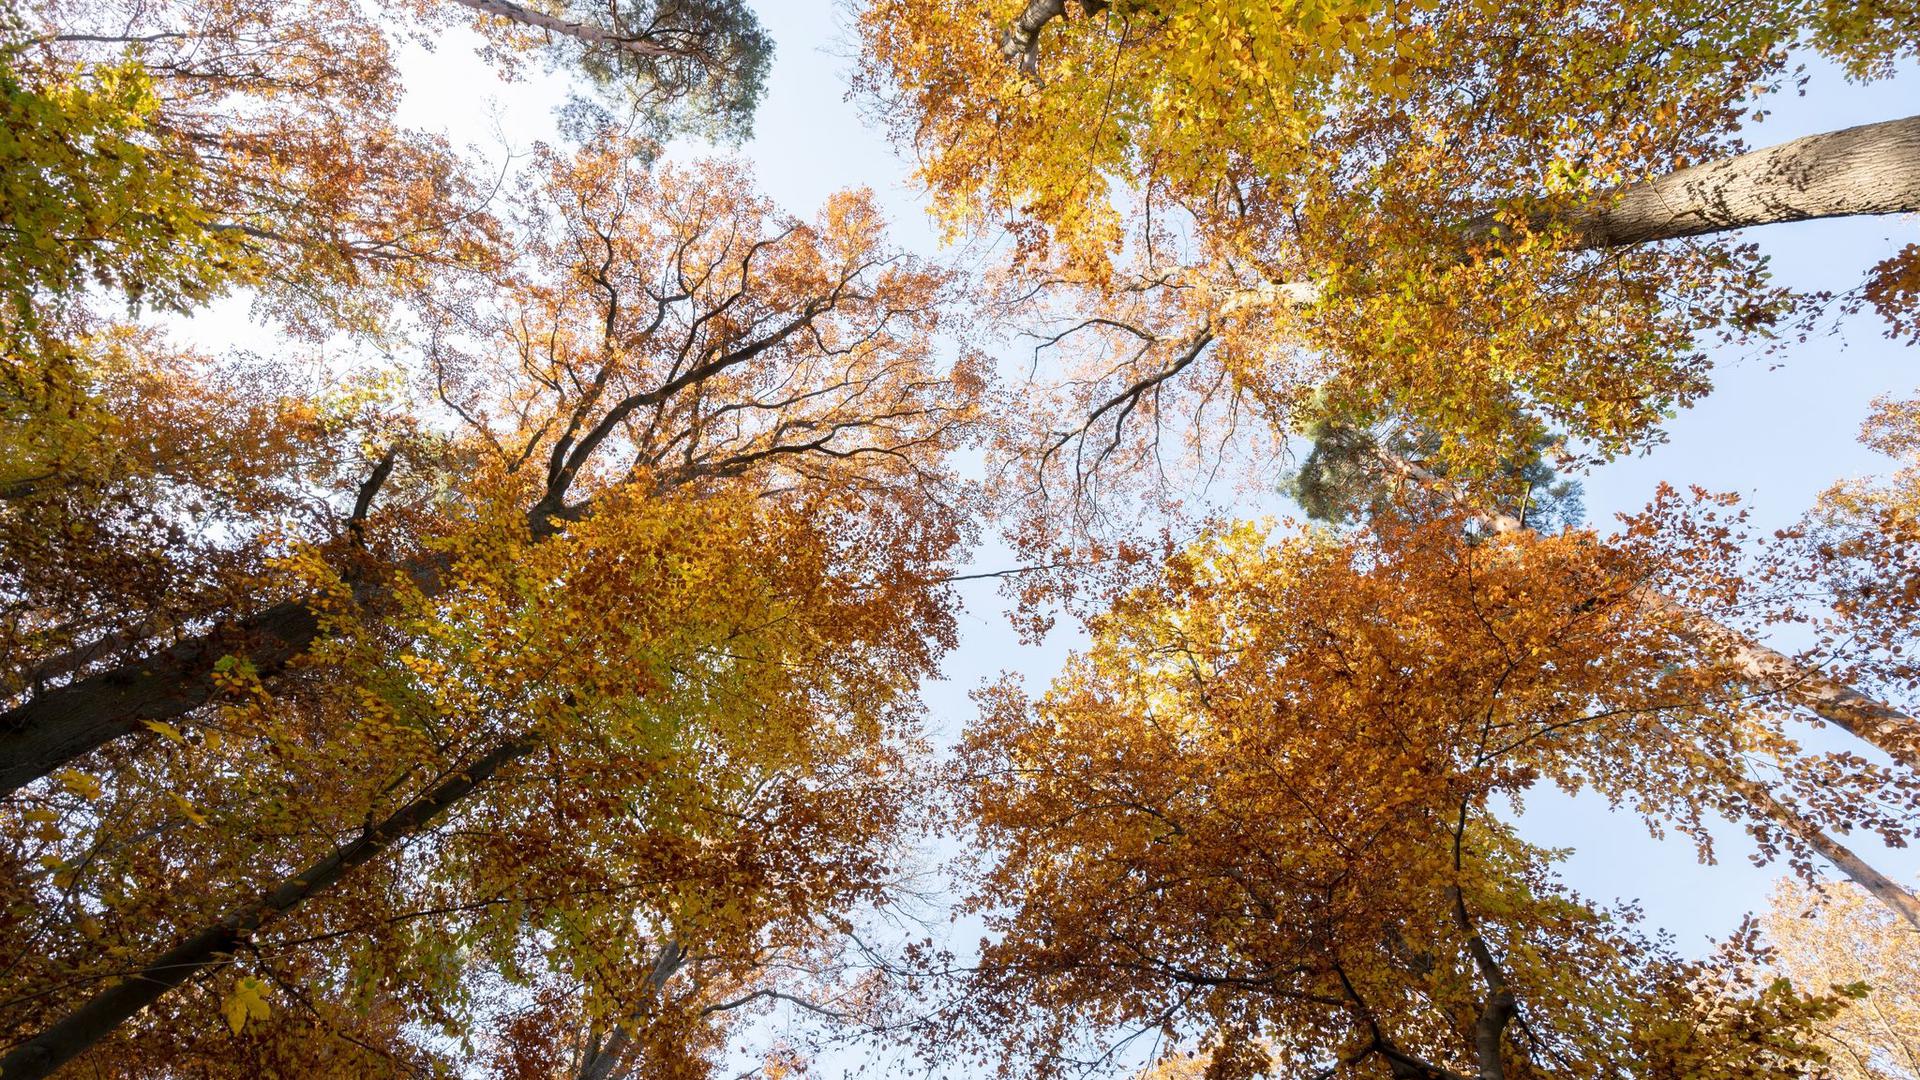 Herbstlich gefärbte Baumkronen leuchten in der Sonne vor blauem Himmel.